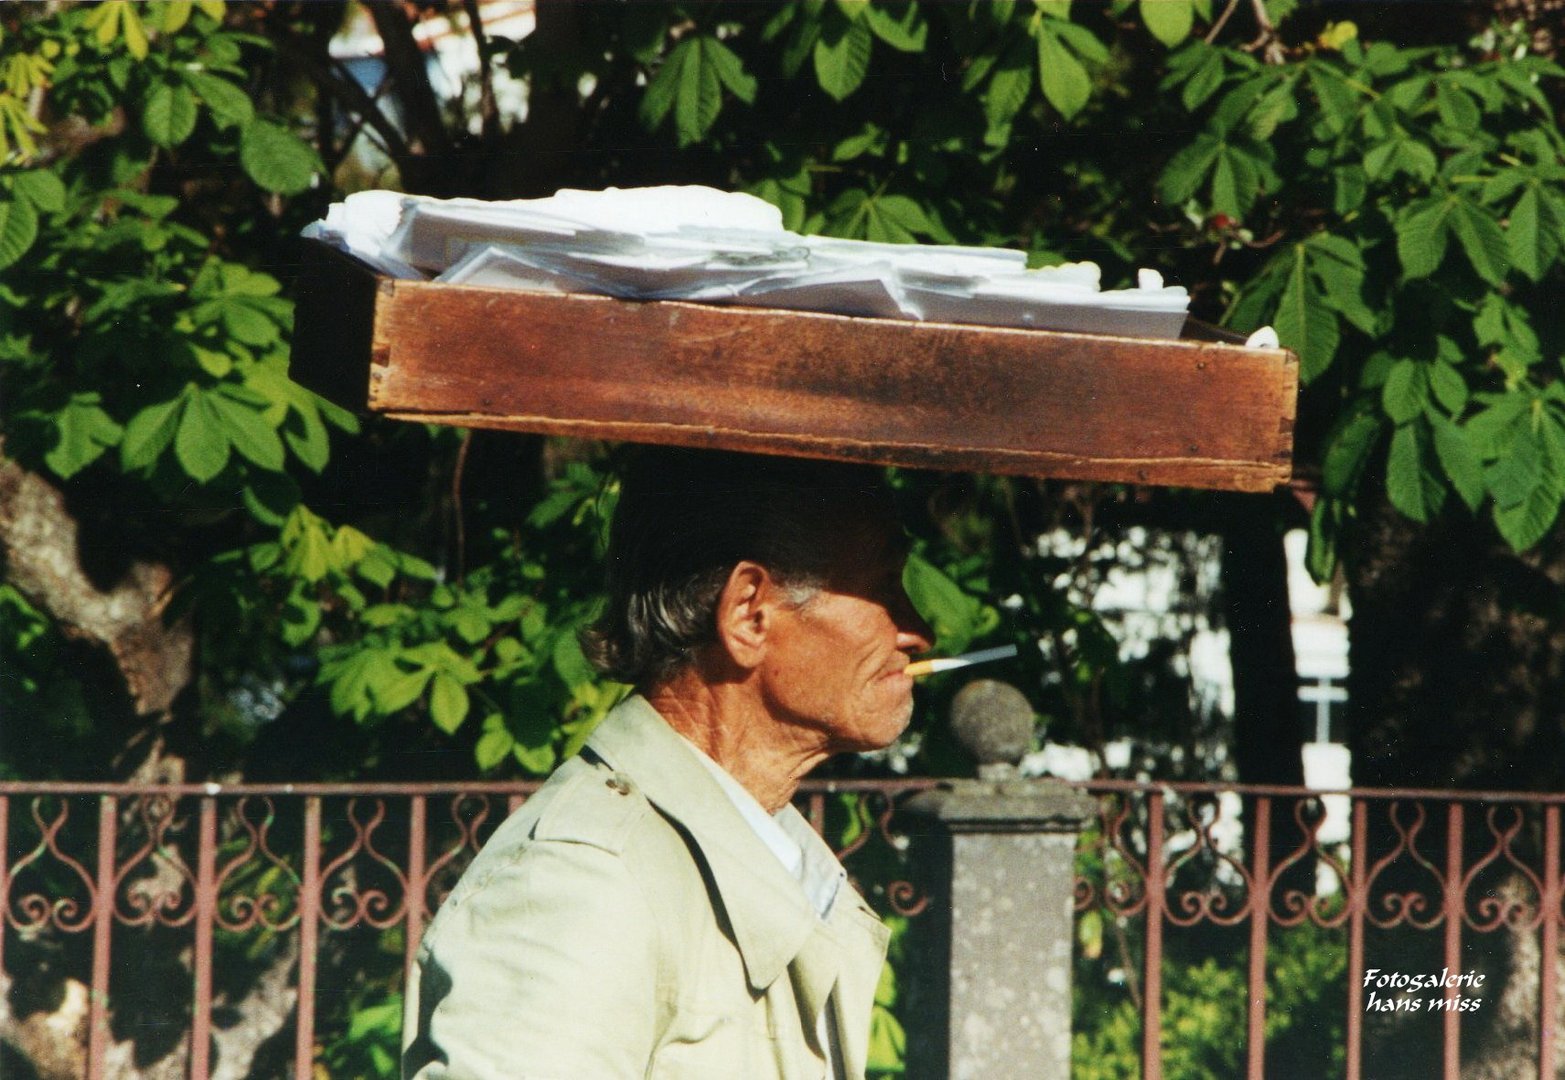 Verkäufer von Briefpapier auf Madeira